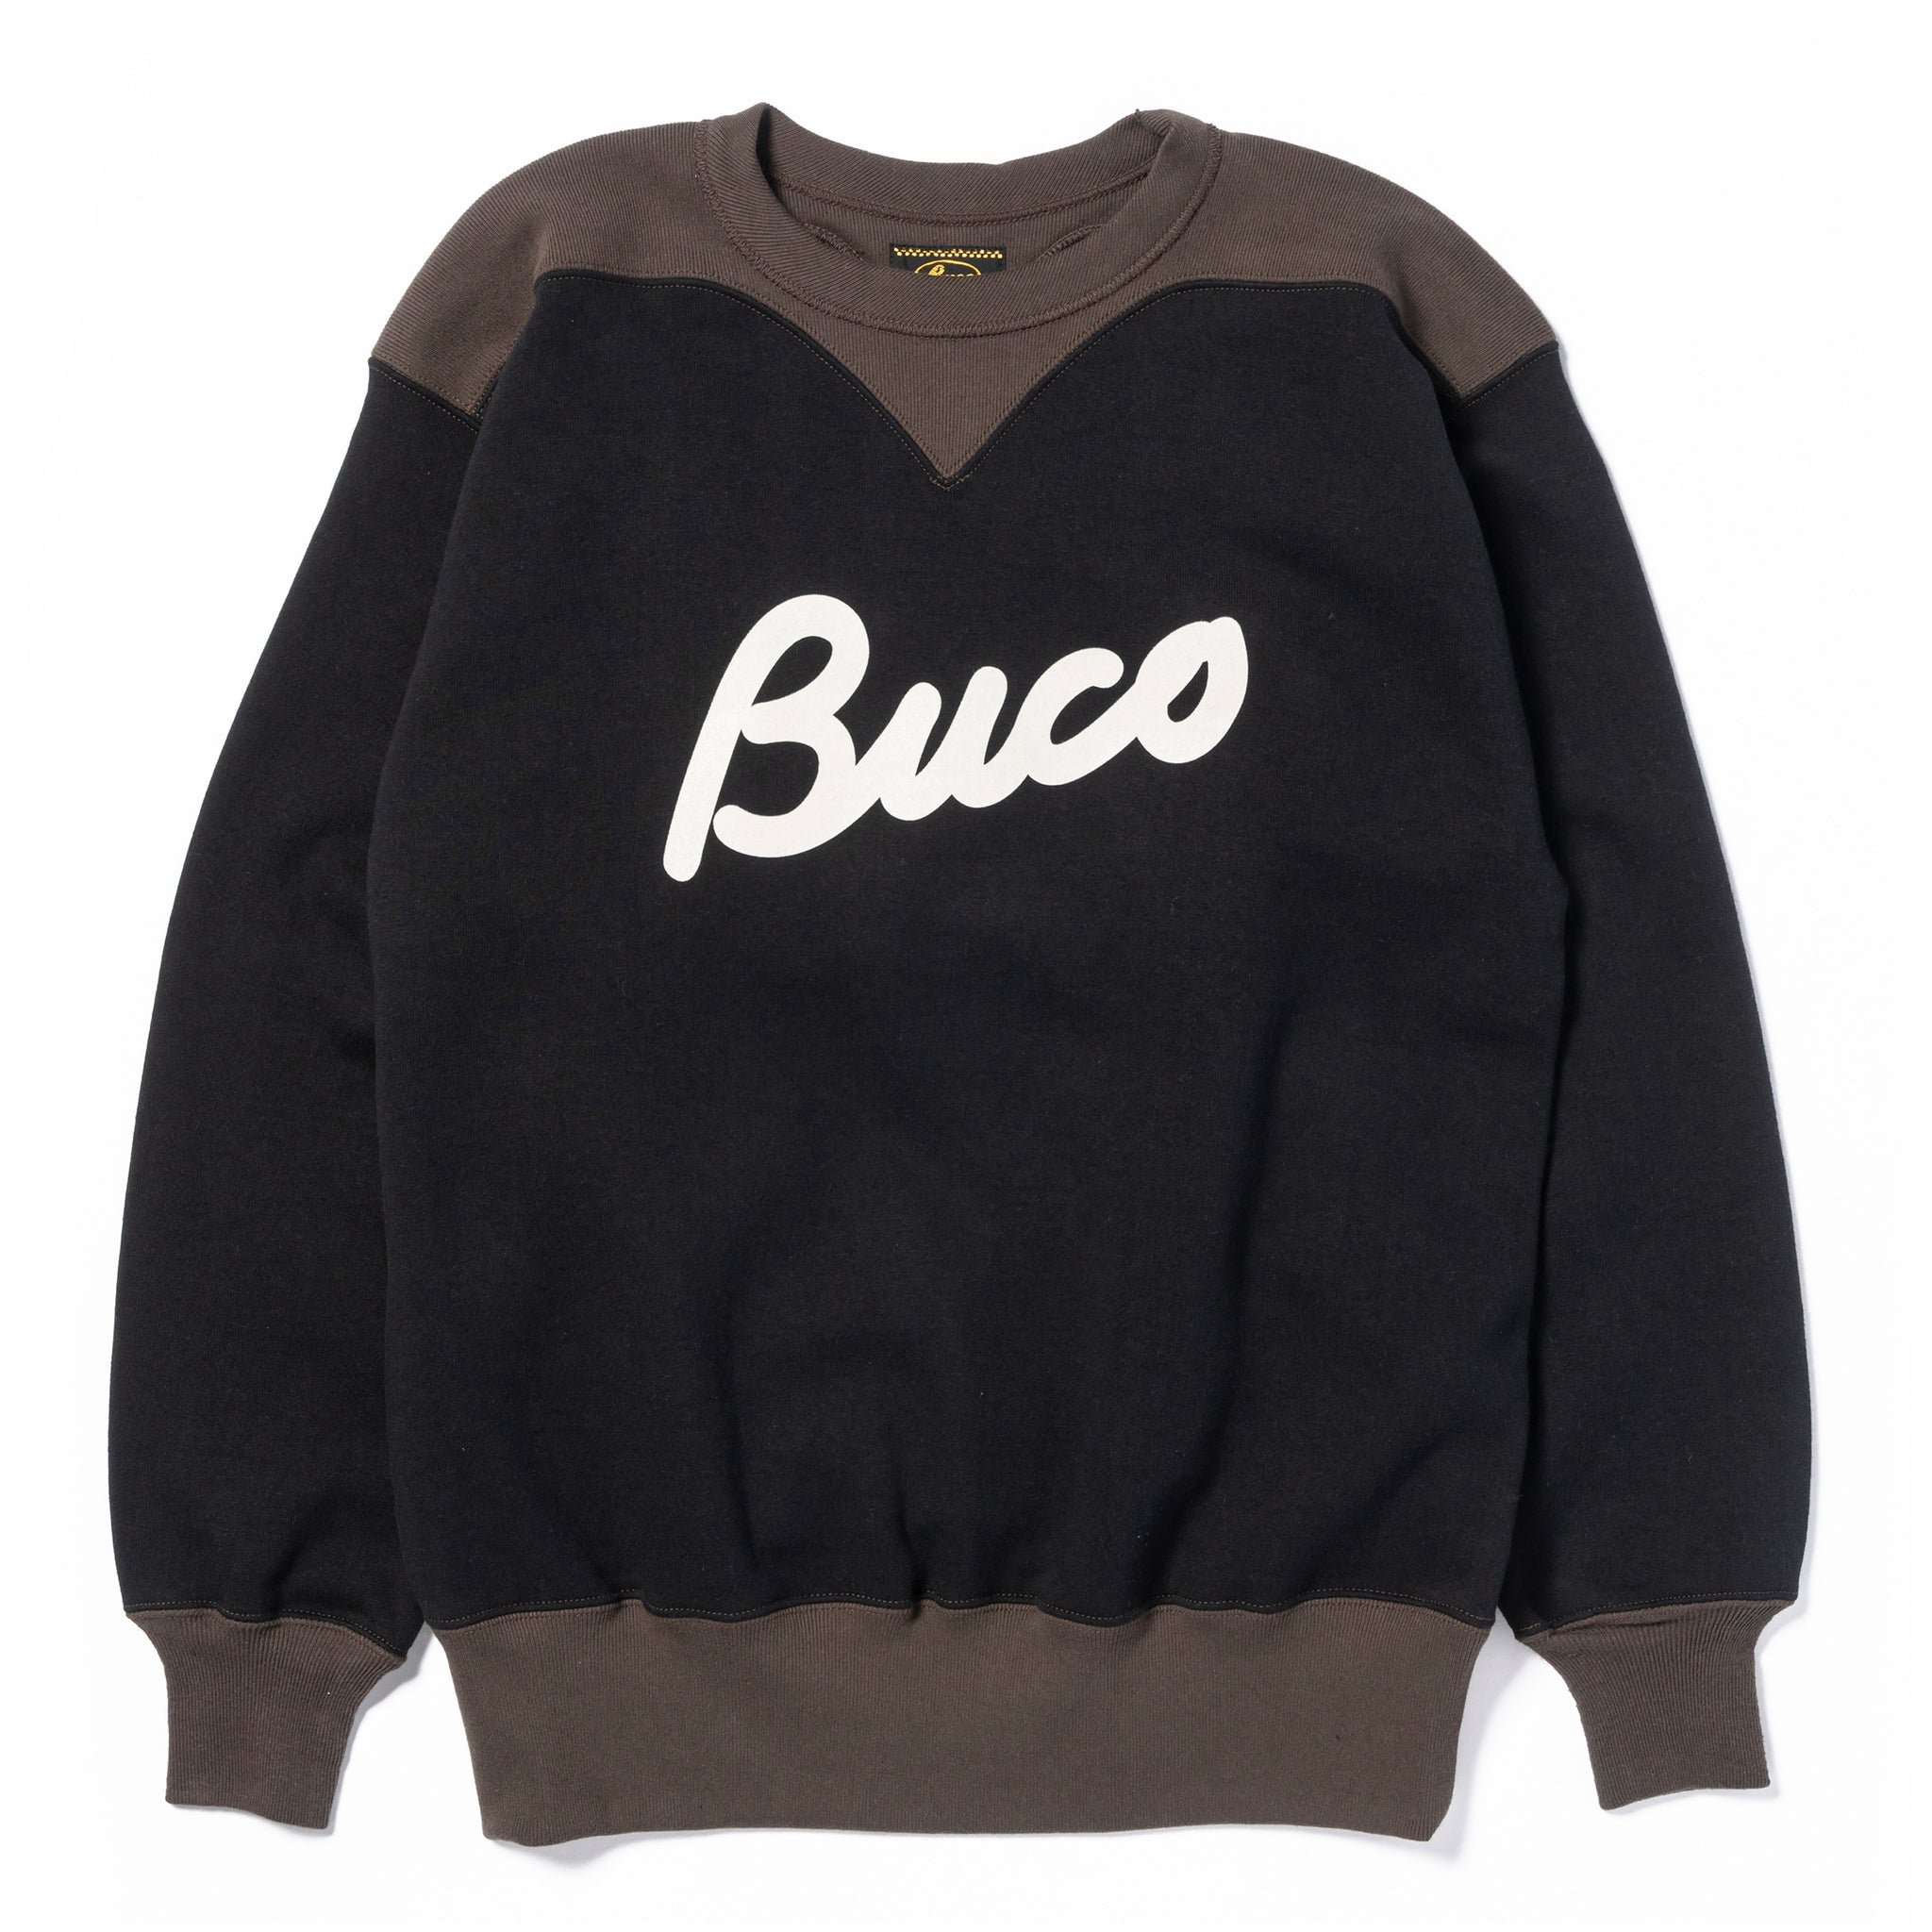 BUCO TWO-TONE SWEATSHIRT / BUCO